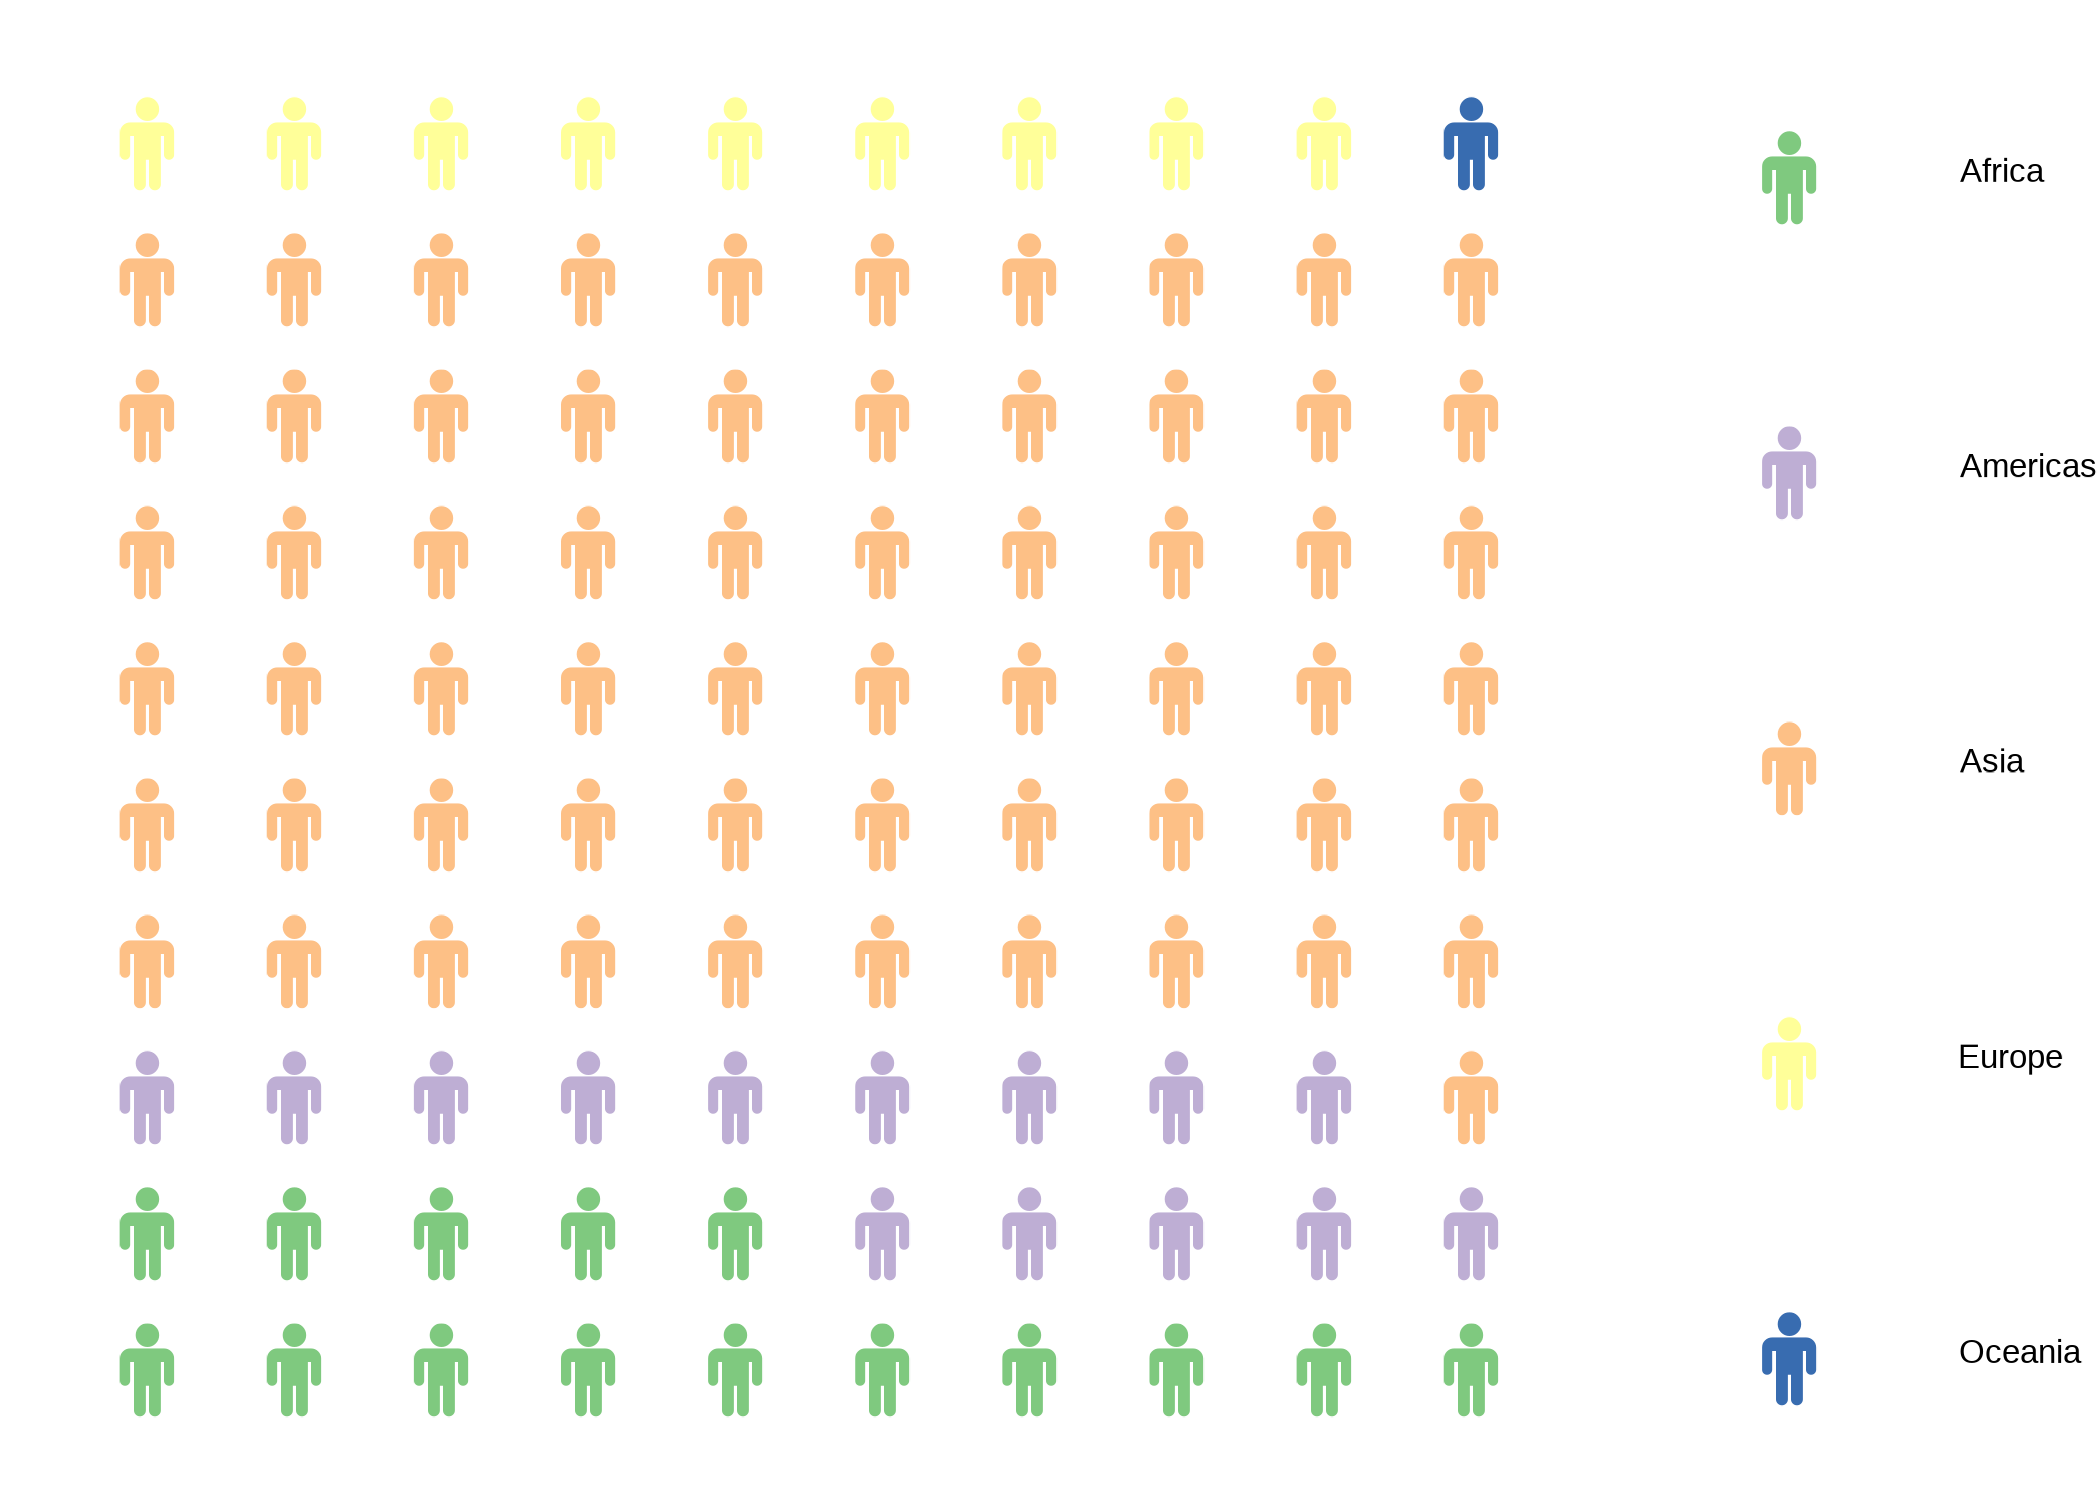 Pitograma de la participación porcentual en la población total de cada continente